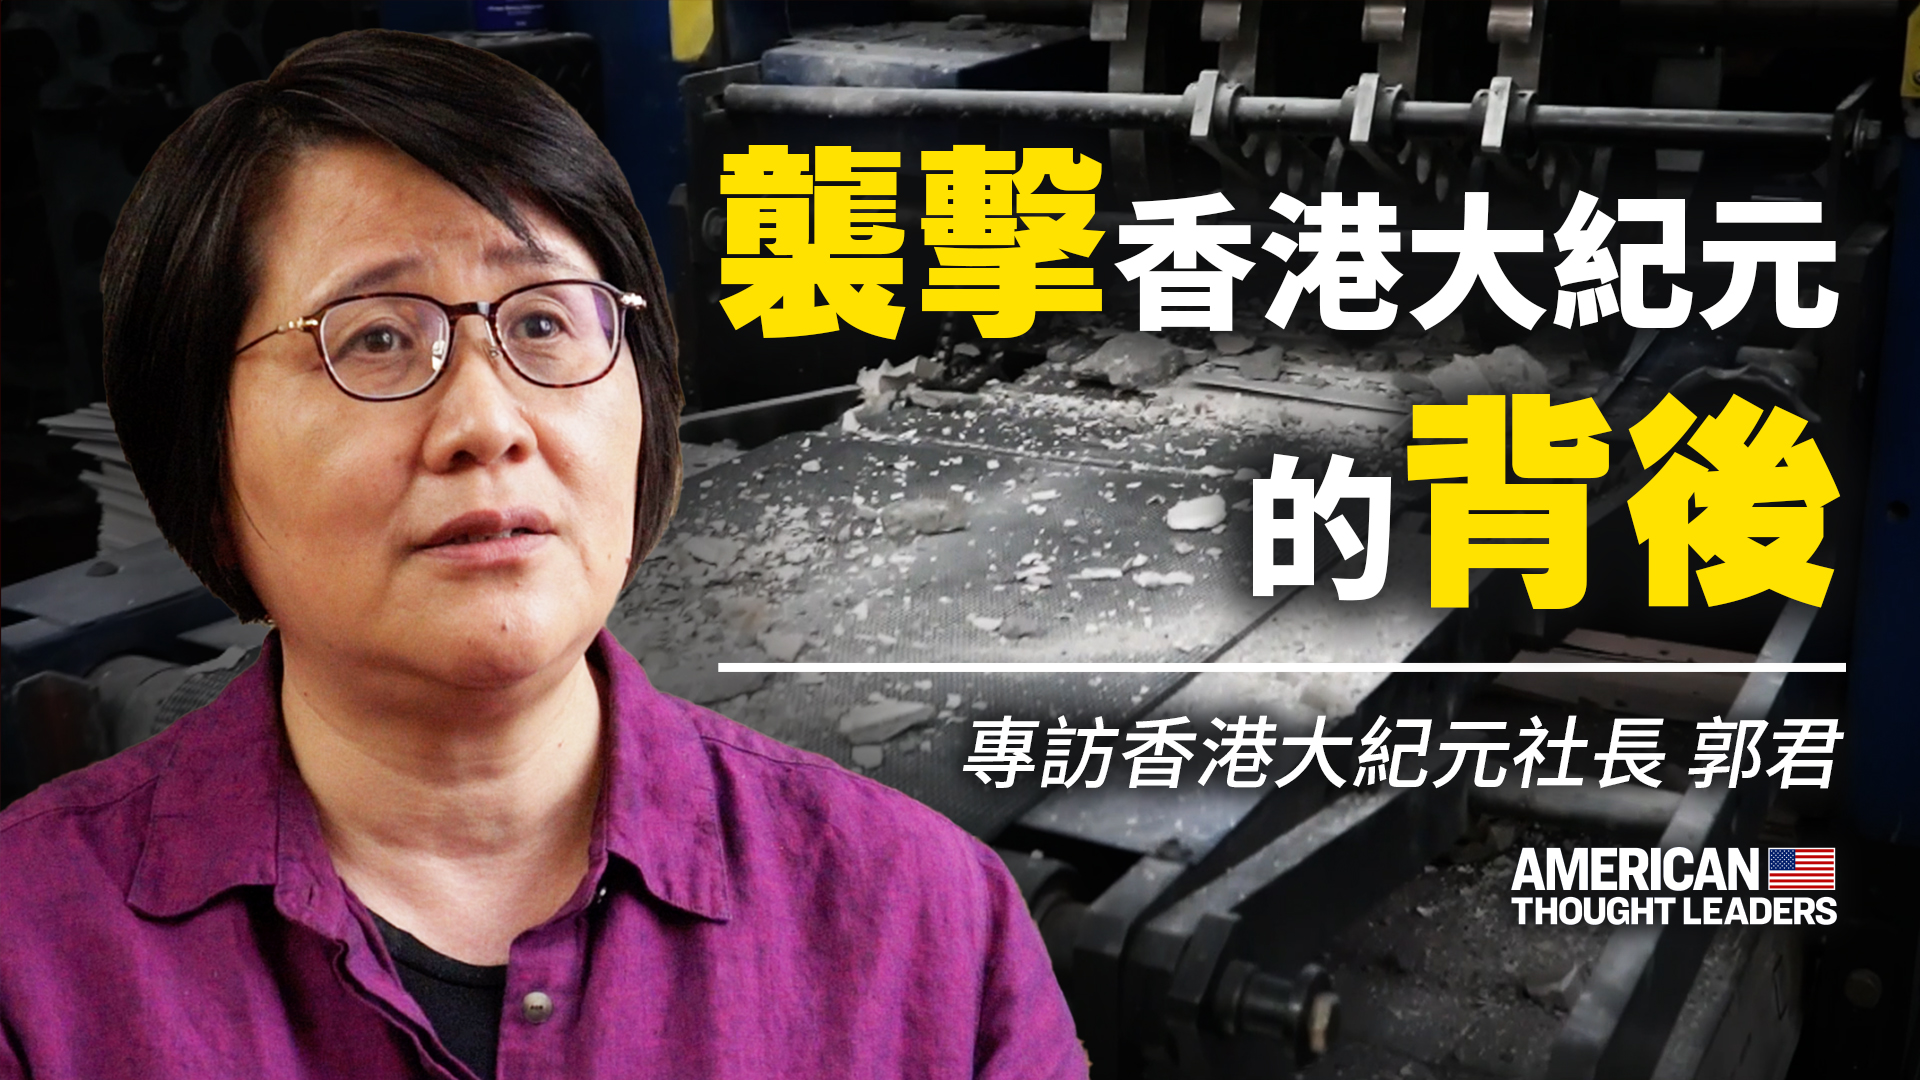 《大紀元時報》聯合創辦人之一郭君女士：香港大紀元遭襲擊內幕！中共脅迫難獨立執法，香港毫無法治；國際社會唾棄中共，正義在聚集！| 美國思想領袖 大紀元